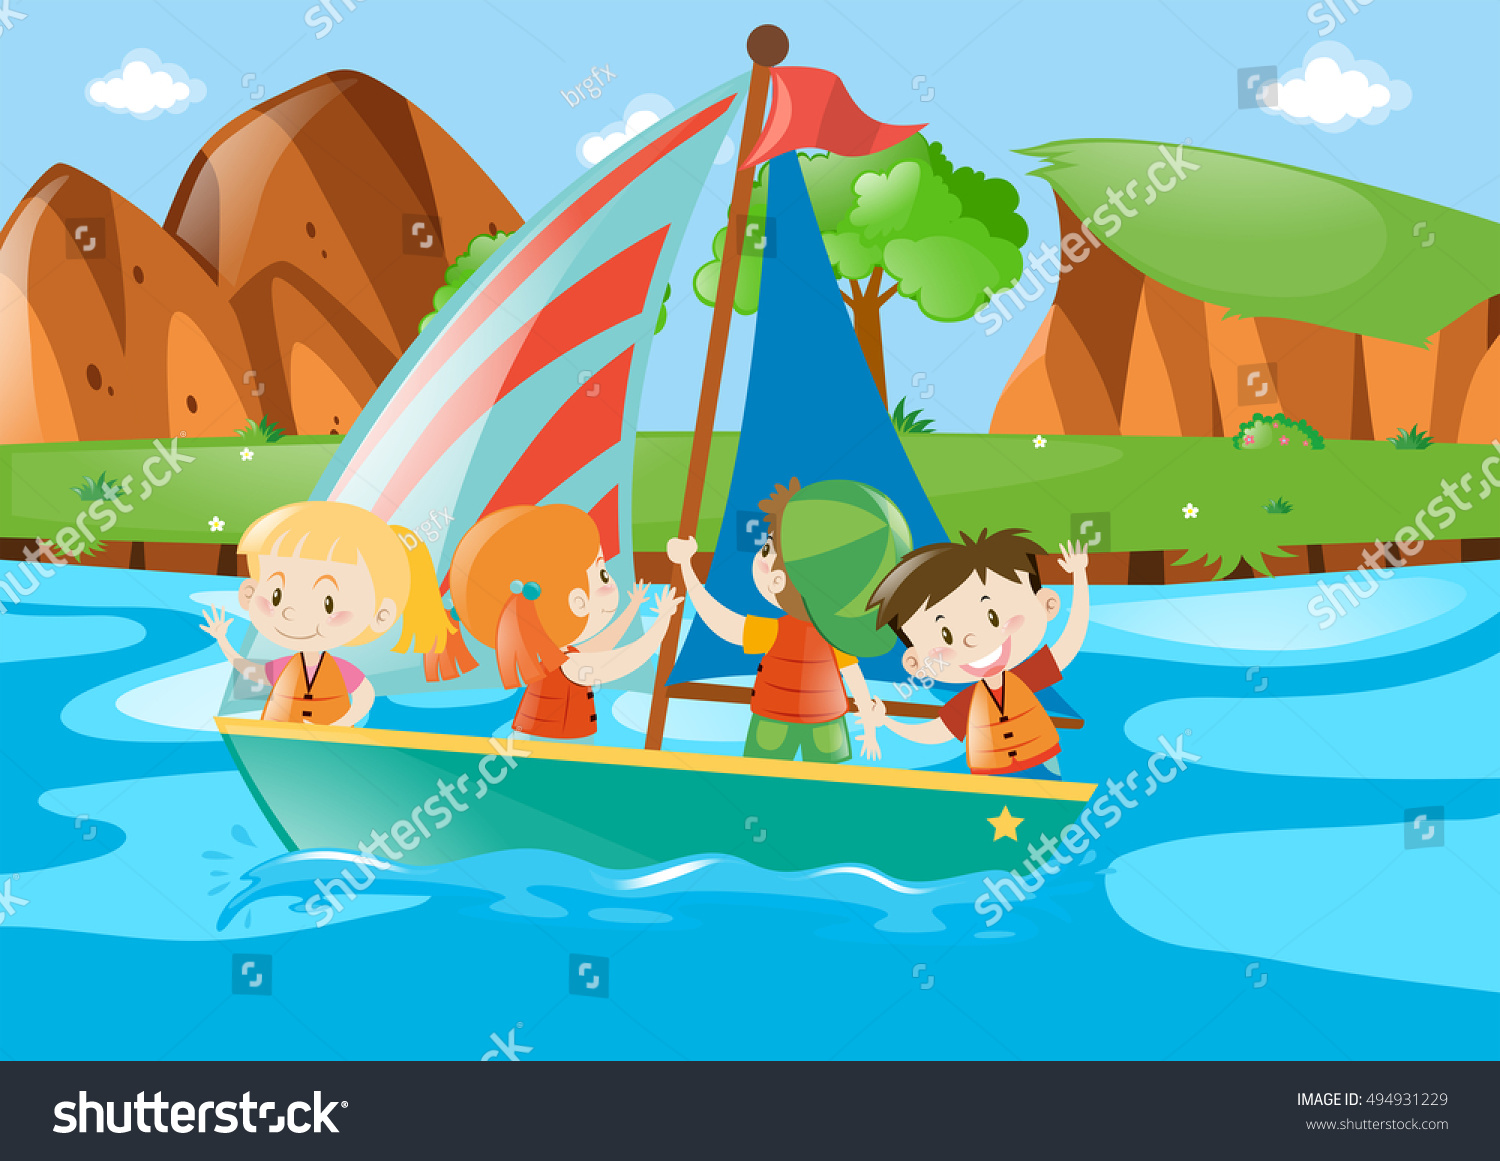 SVG of Four kids sailing boat in river illustration svg